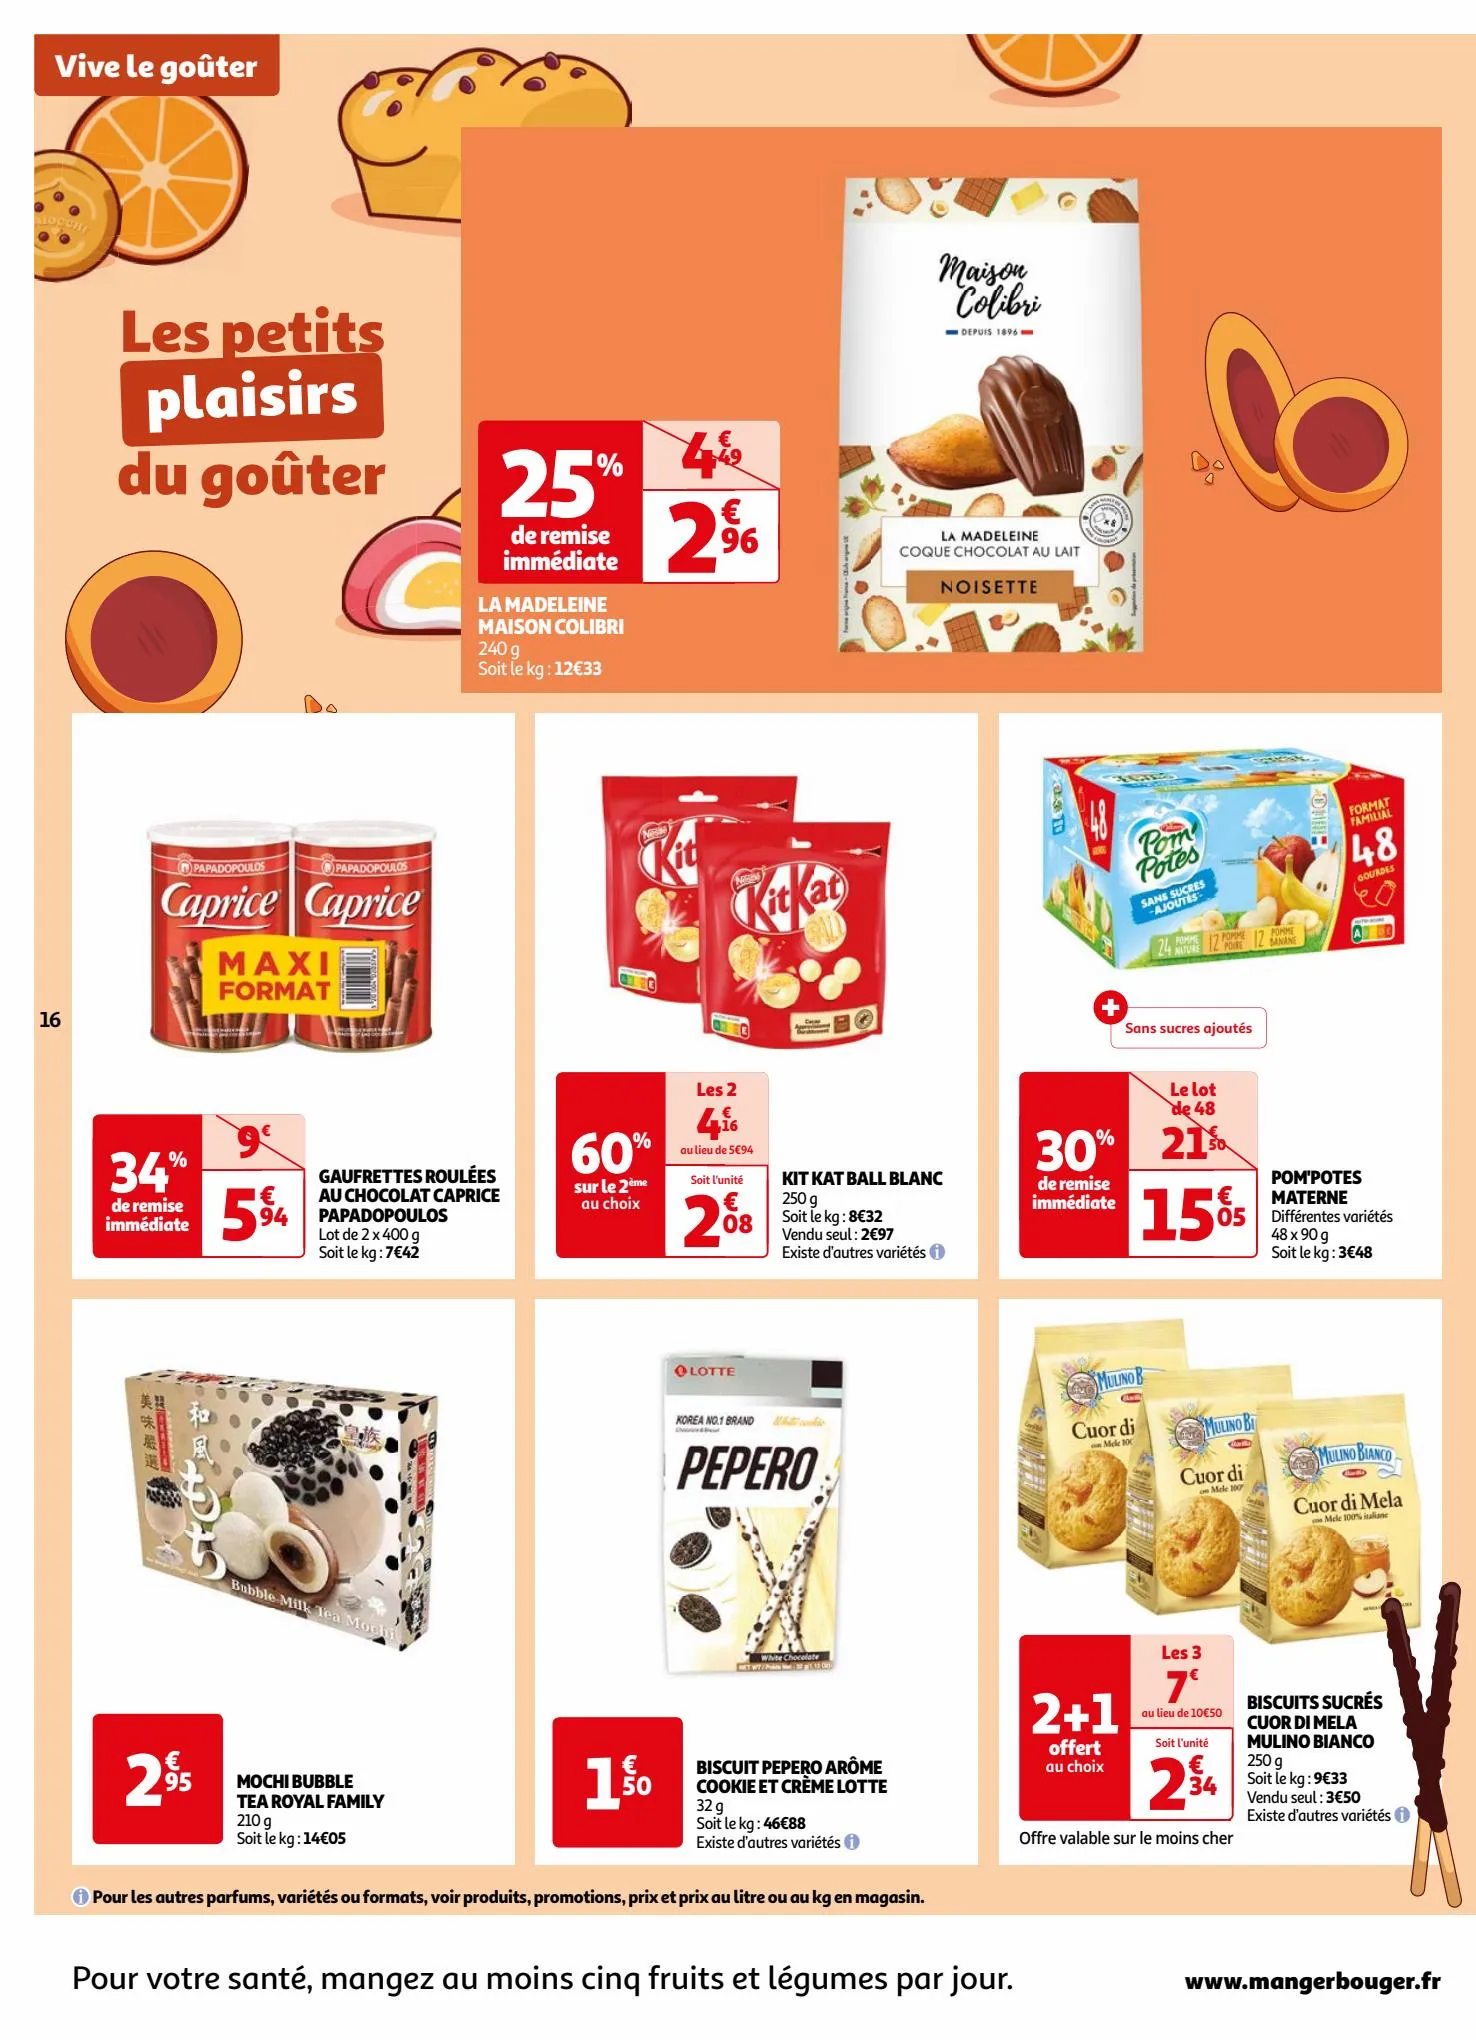 Catalogue Les 7 jours Auchan, page 00016